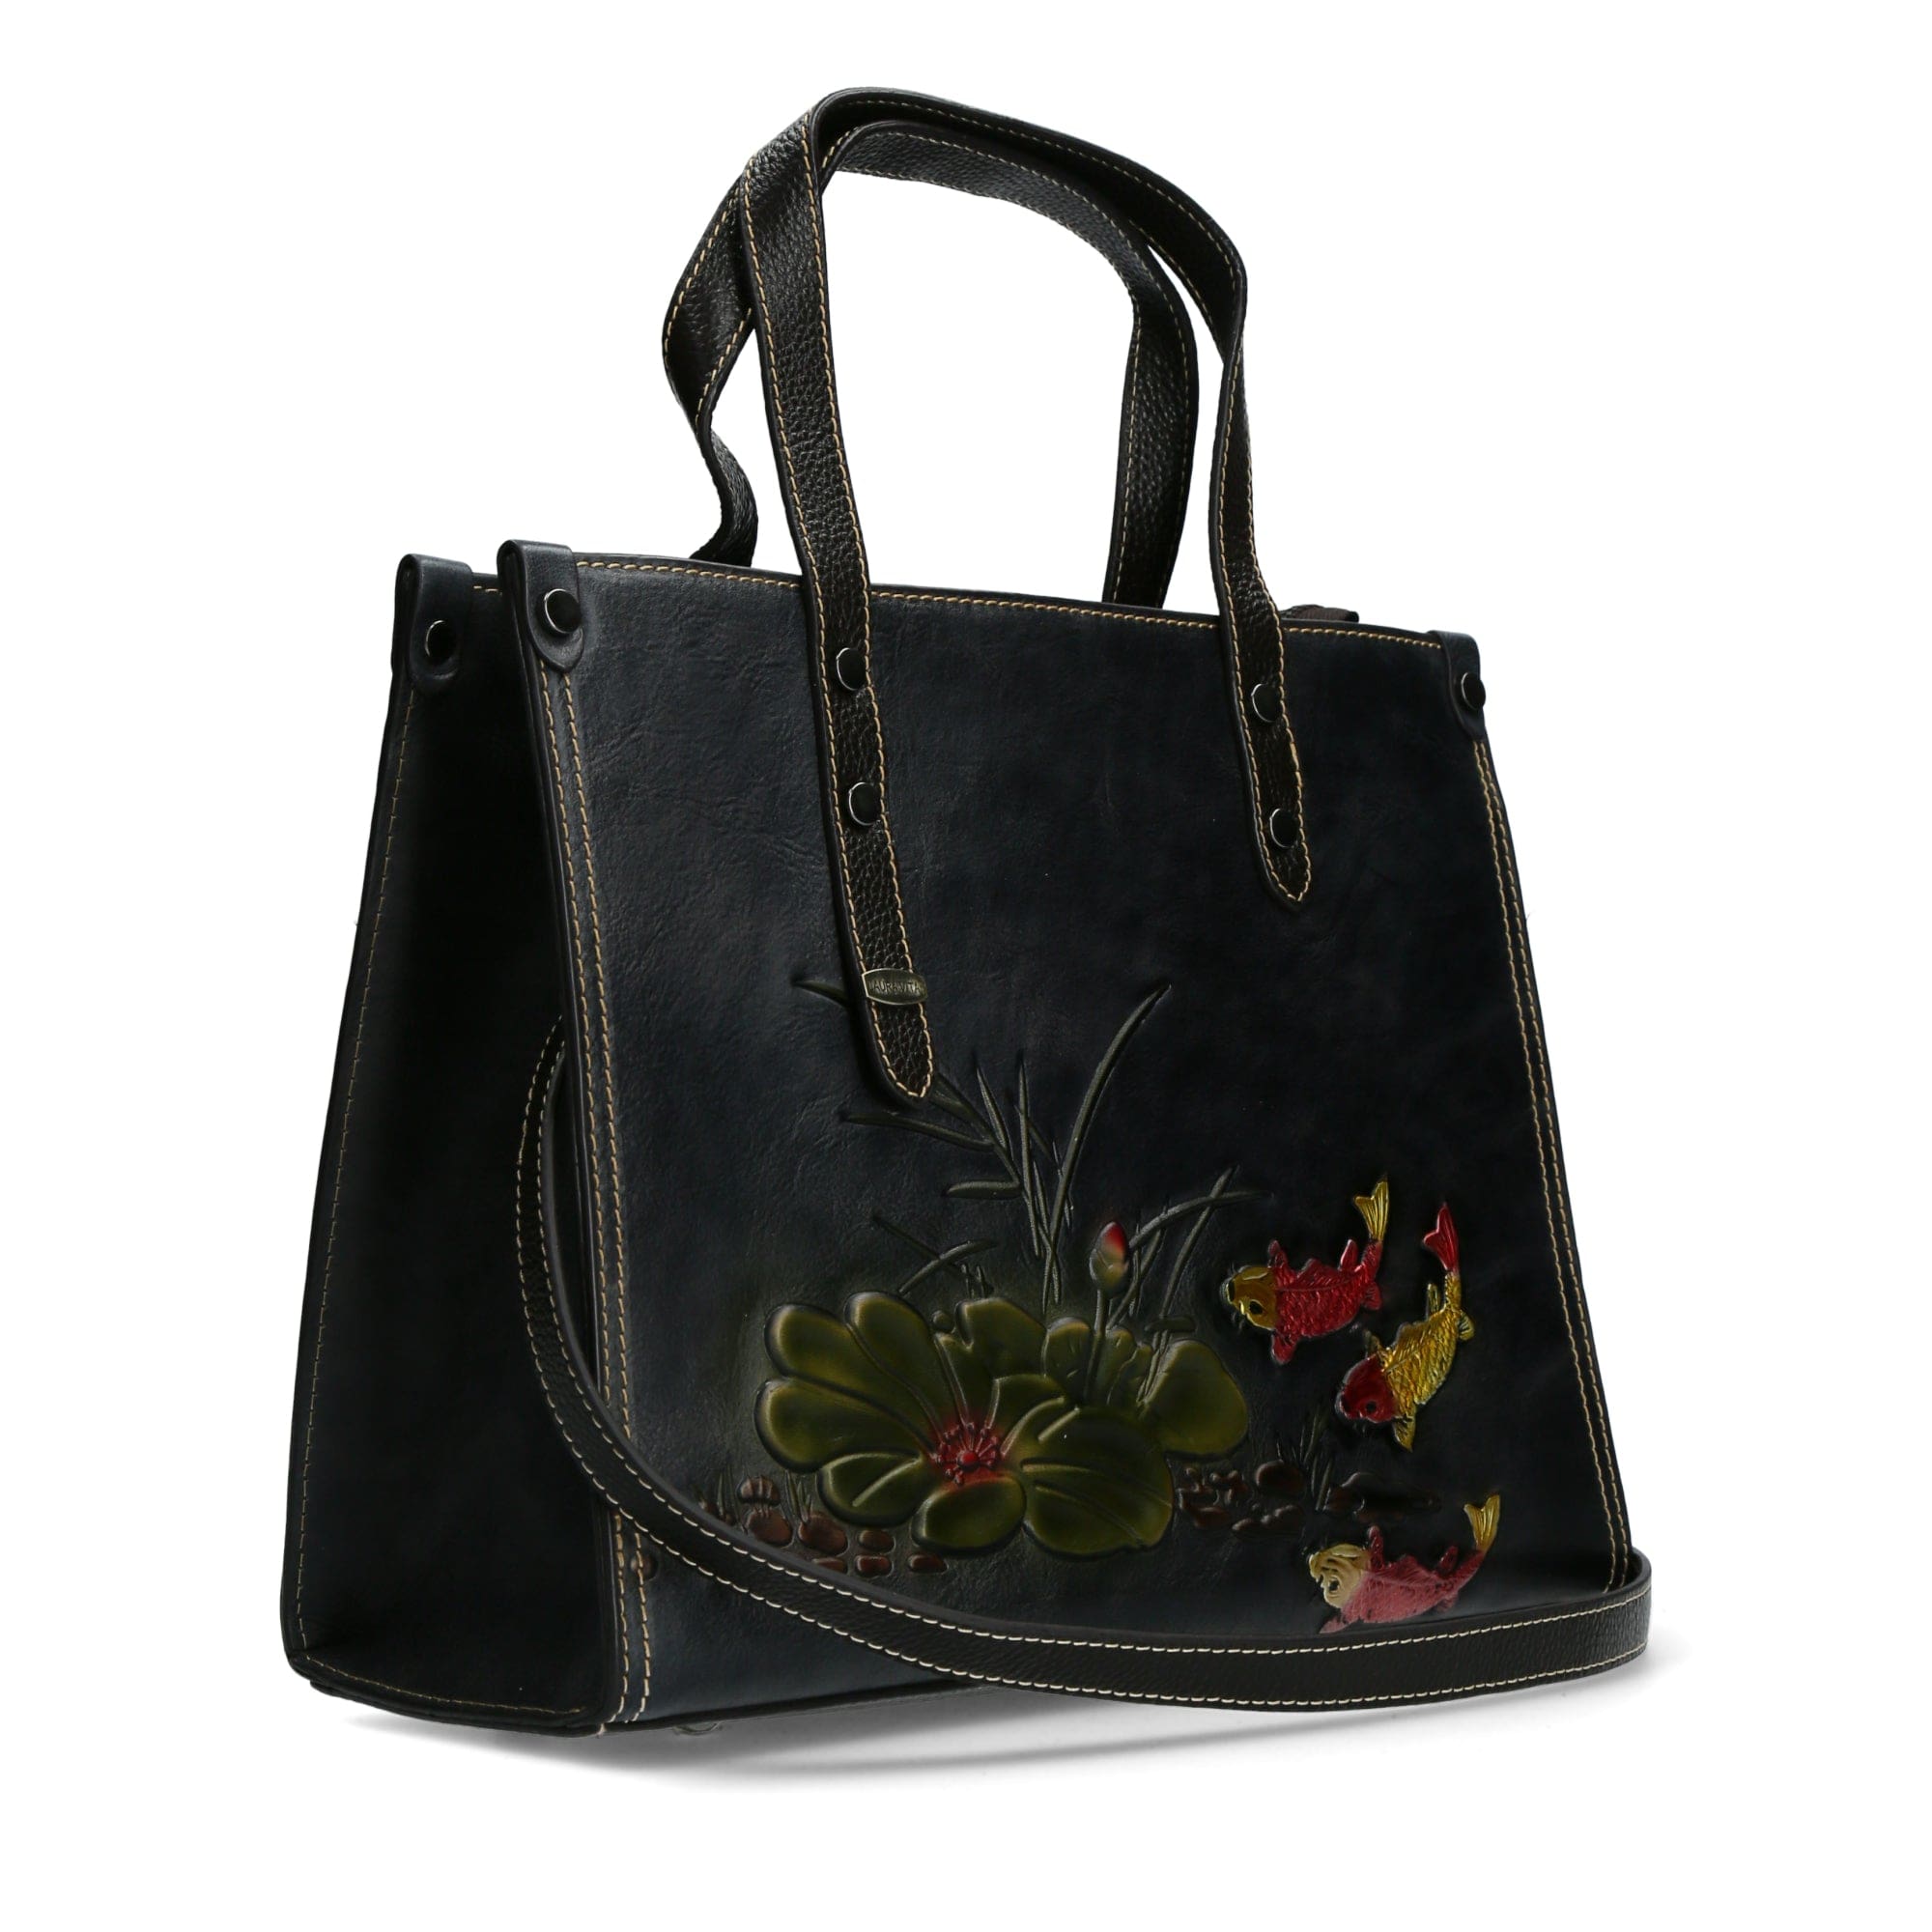 Tapcal leather bag - Bag